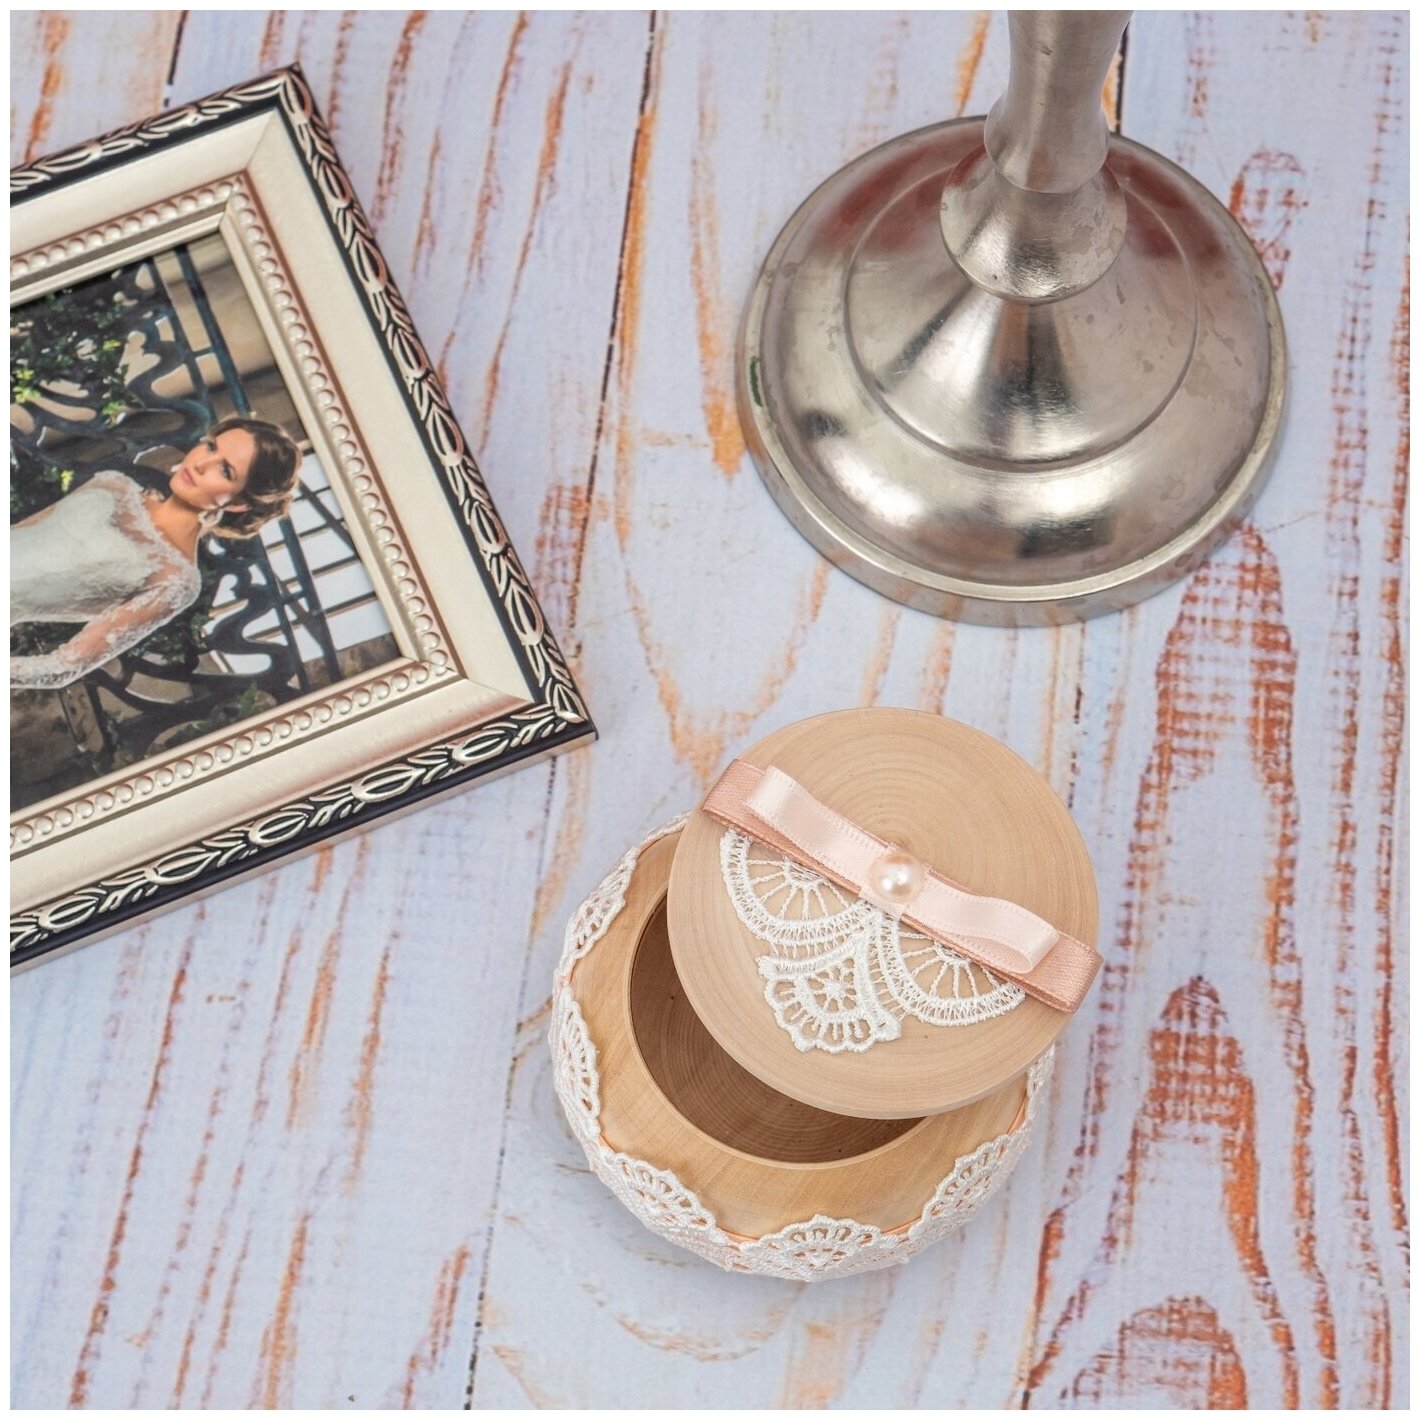 Большая деревянная солонка для каравая "Персиковая свадьба" с белым кружевом, жемчугом и светлым розовым бантом из атласа